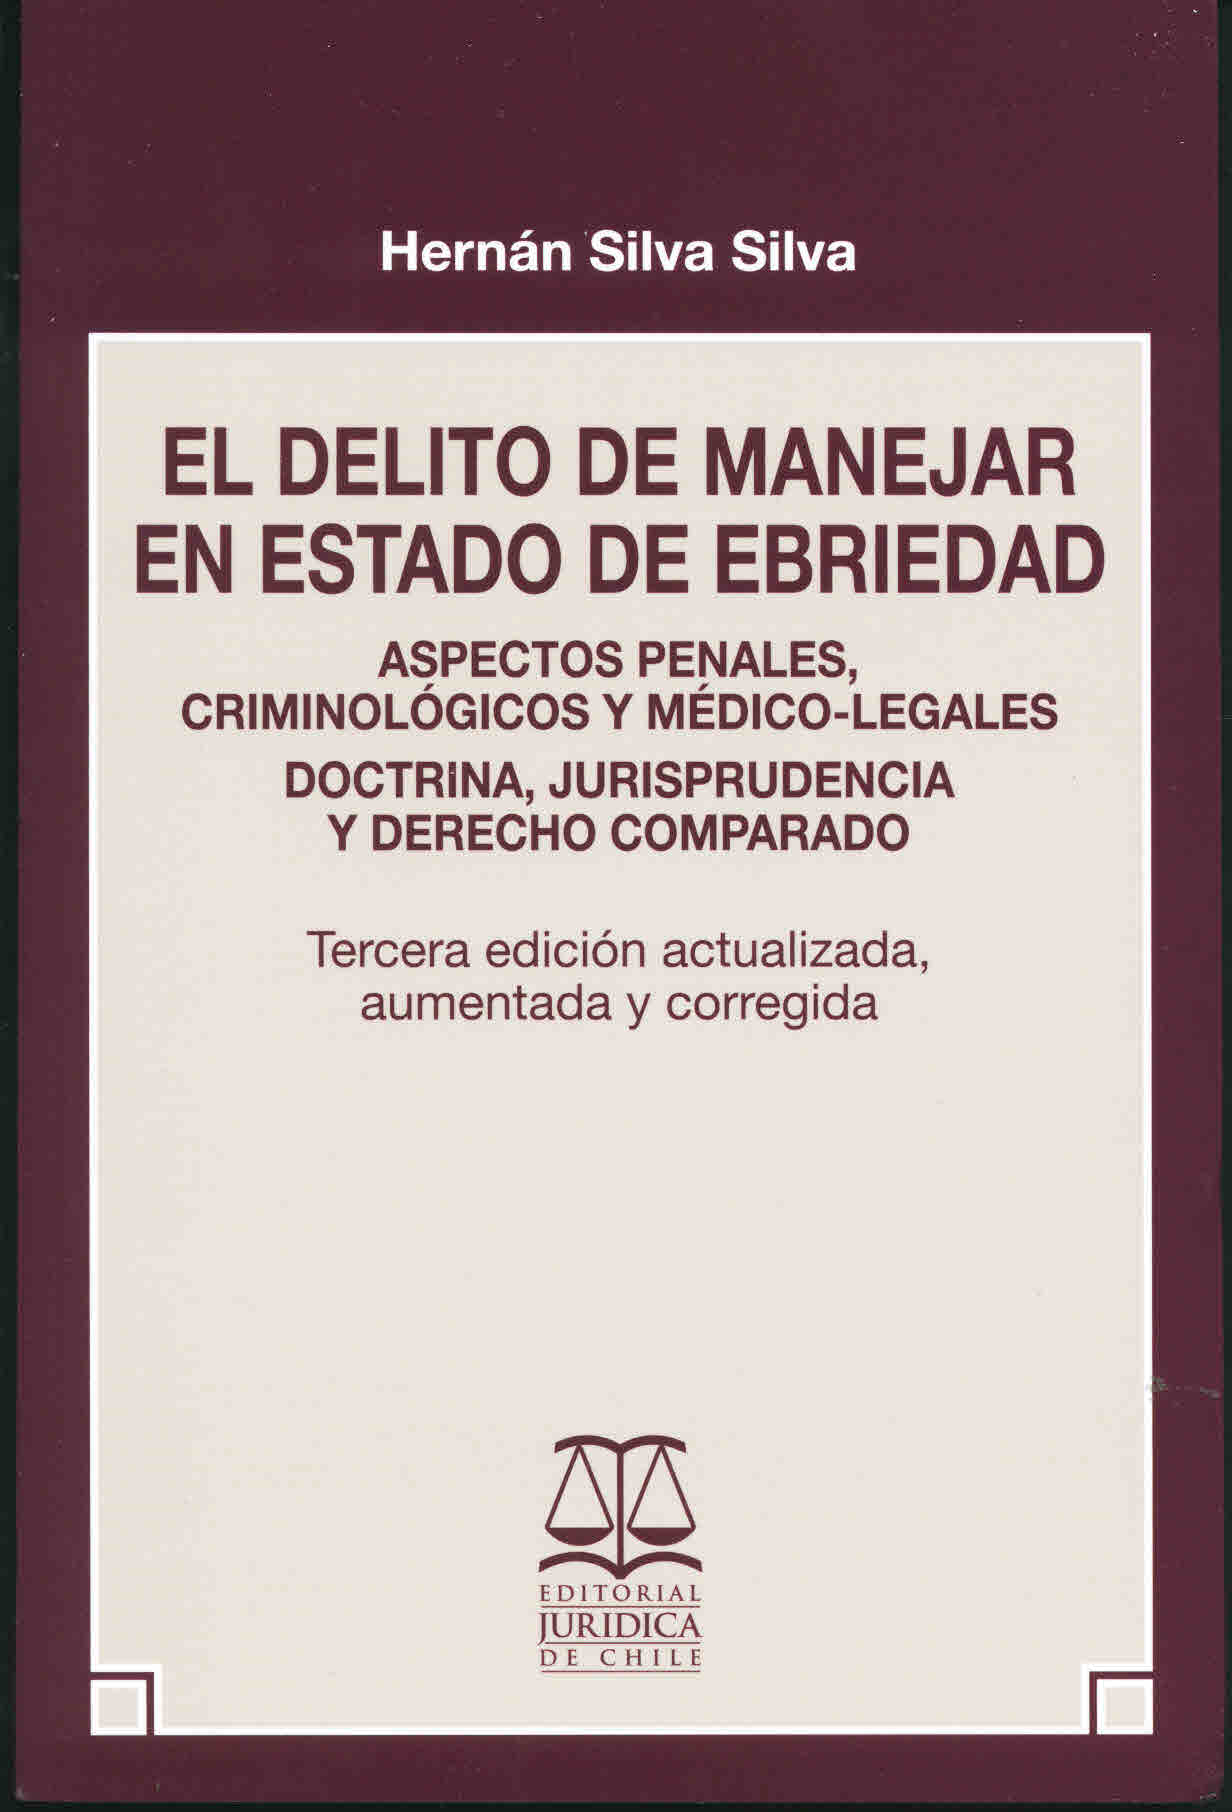 El delito de manejar en estado de ebriedad : aspectos penales, criminológicos y médico-legales.  Doctrina, jurisprudencia y derecho comparado